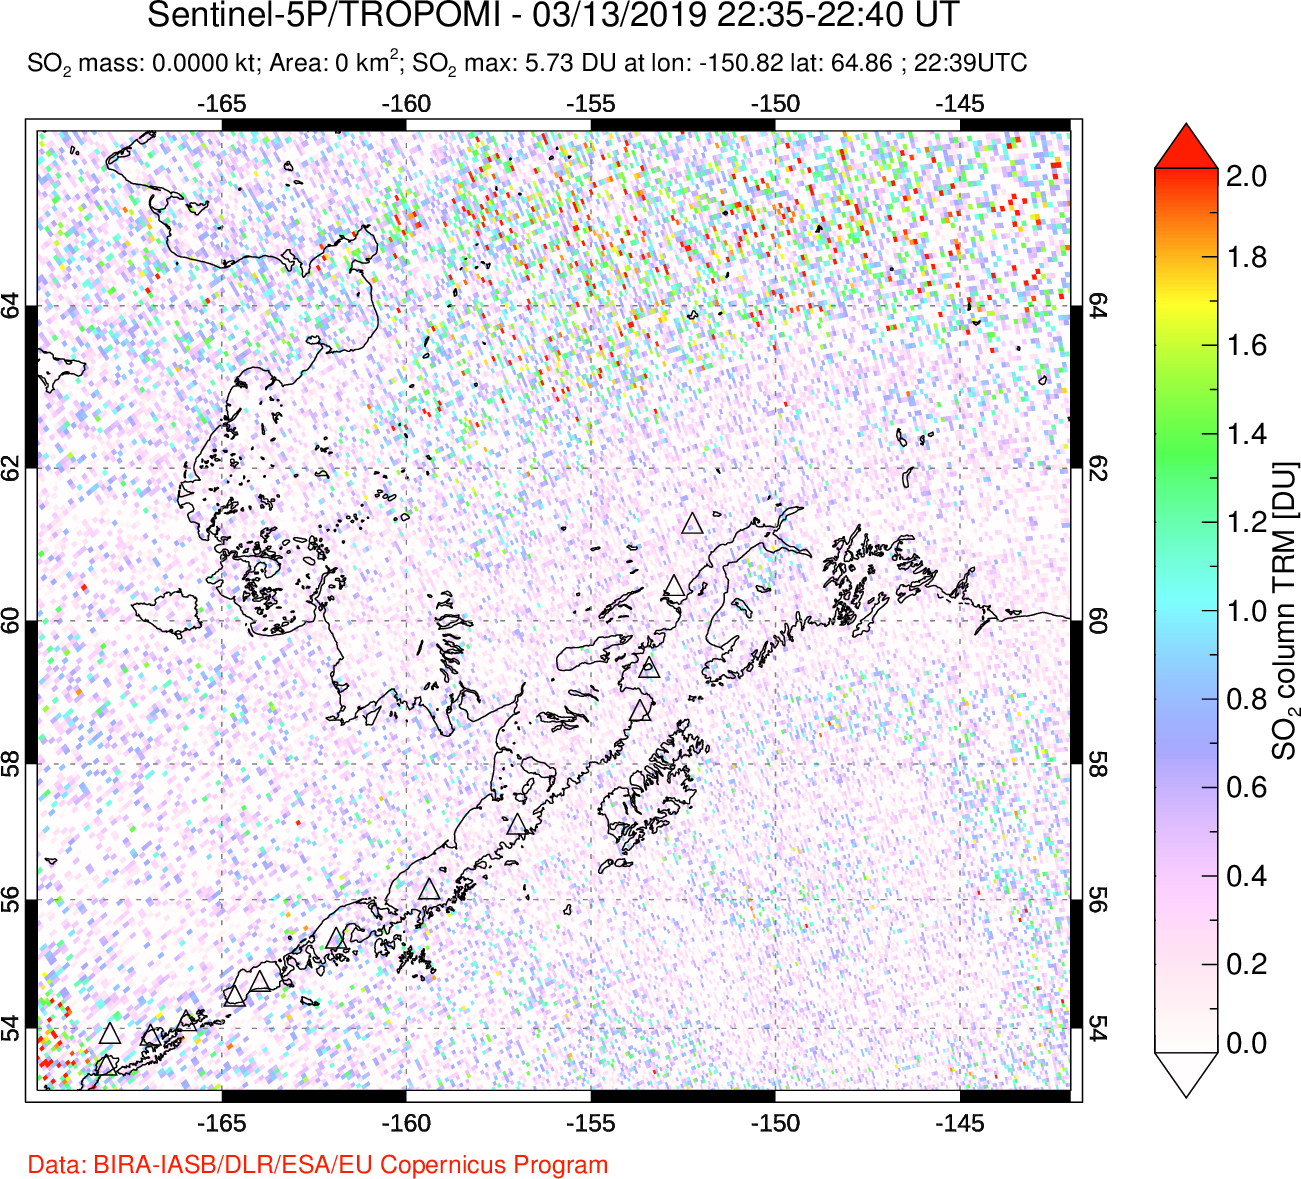 A sulfur dioxide image over Alaska, USA on Mar 13, 2019.